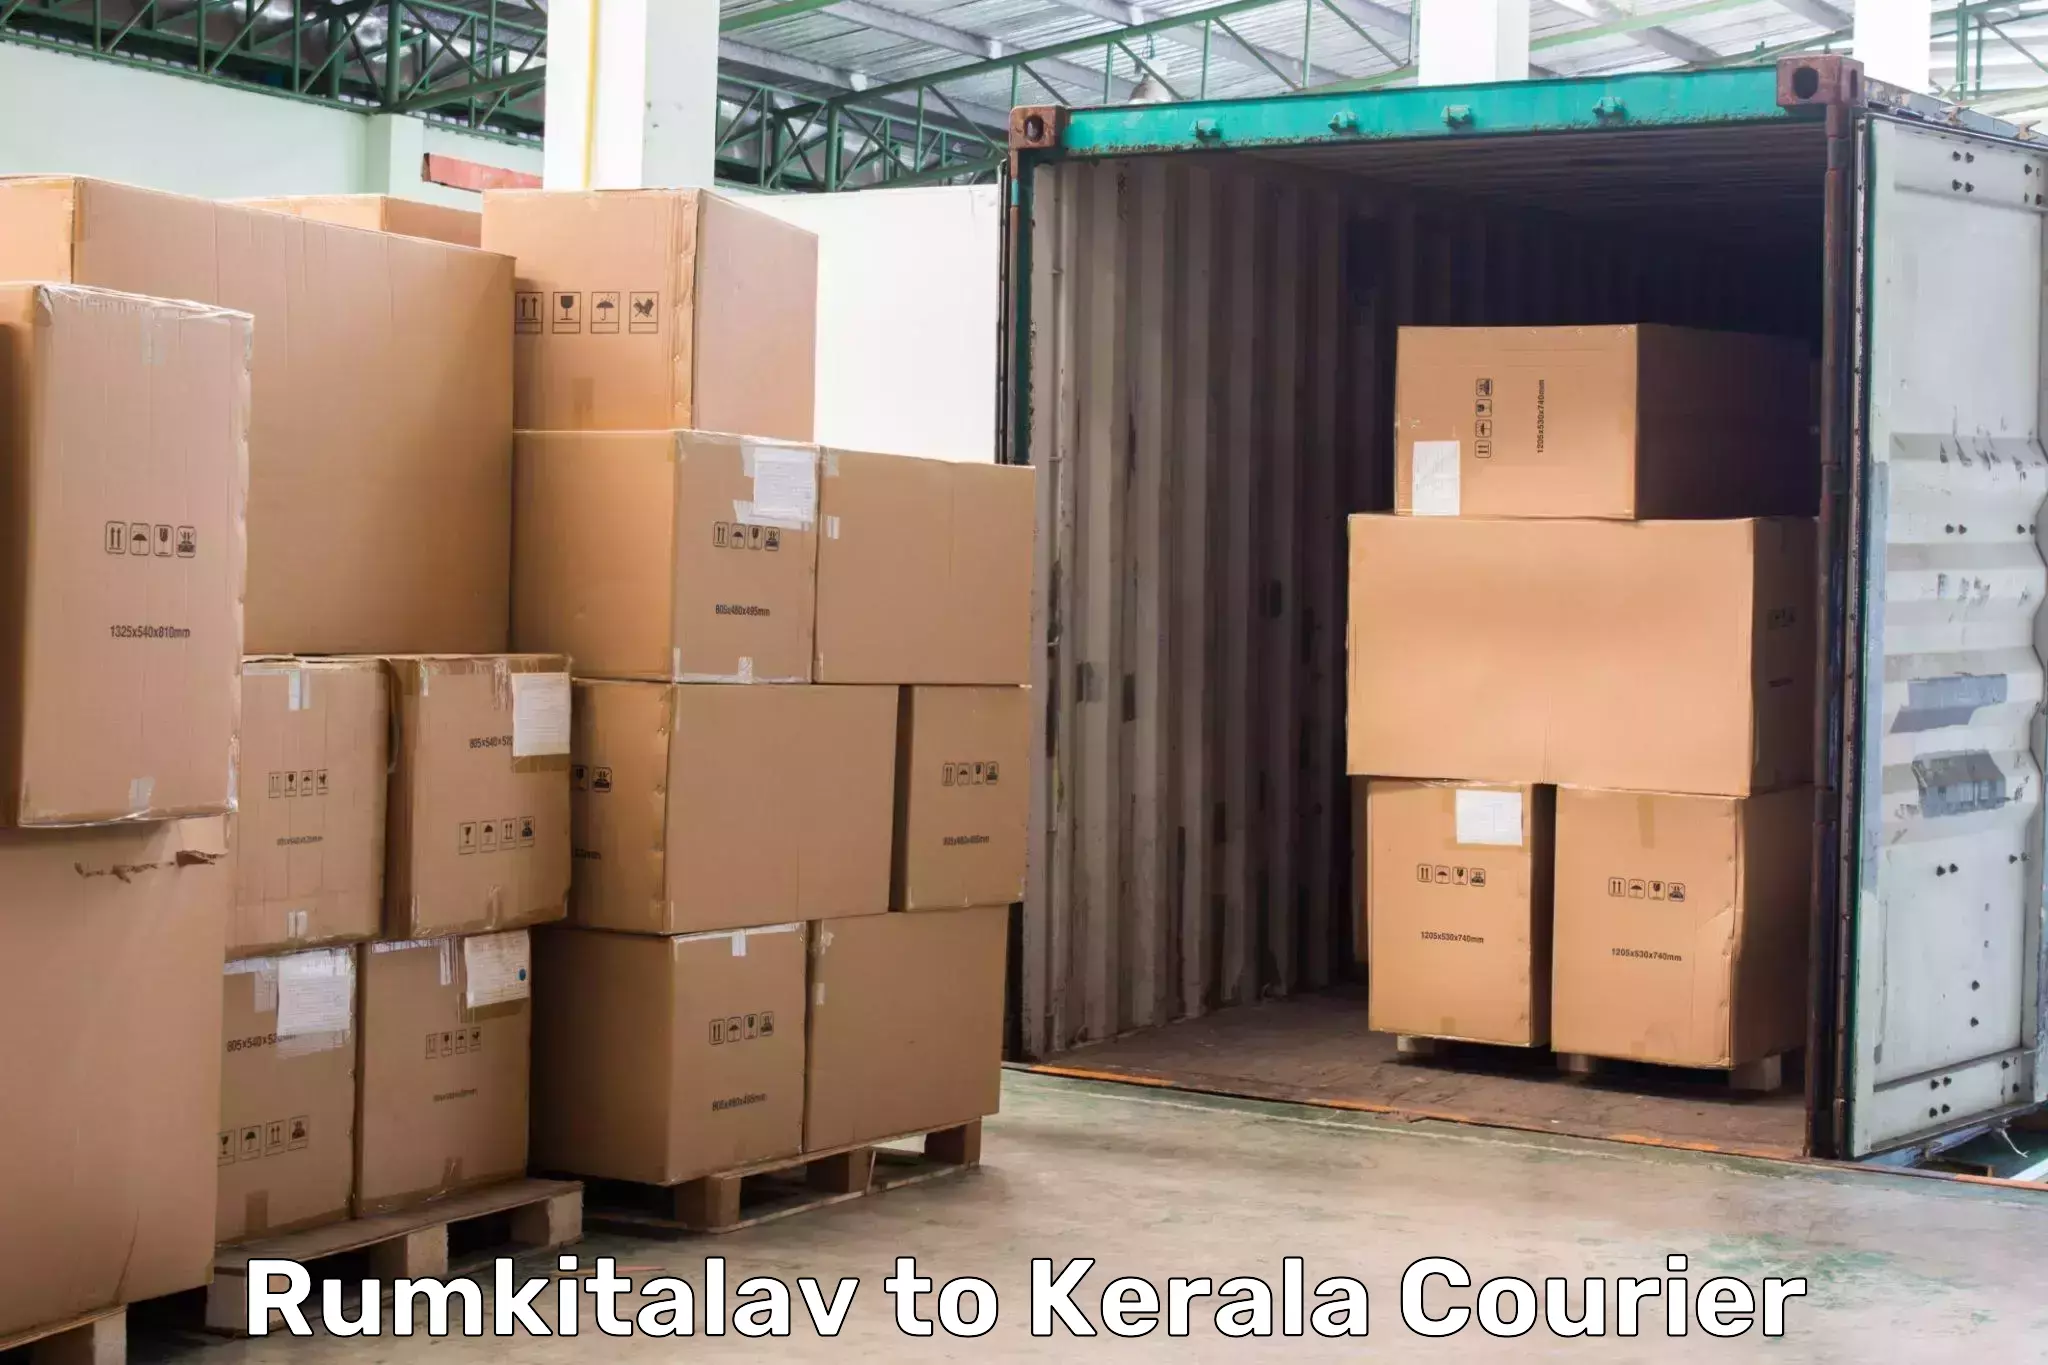 Premium courier services Rumkitalav to Wayanad